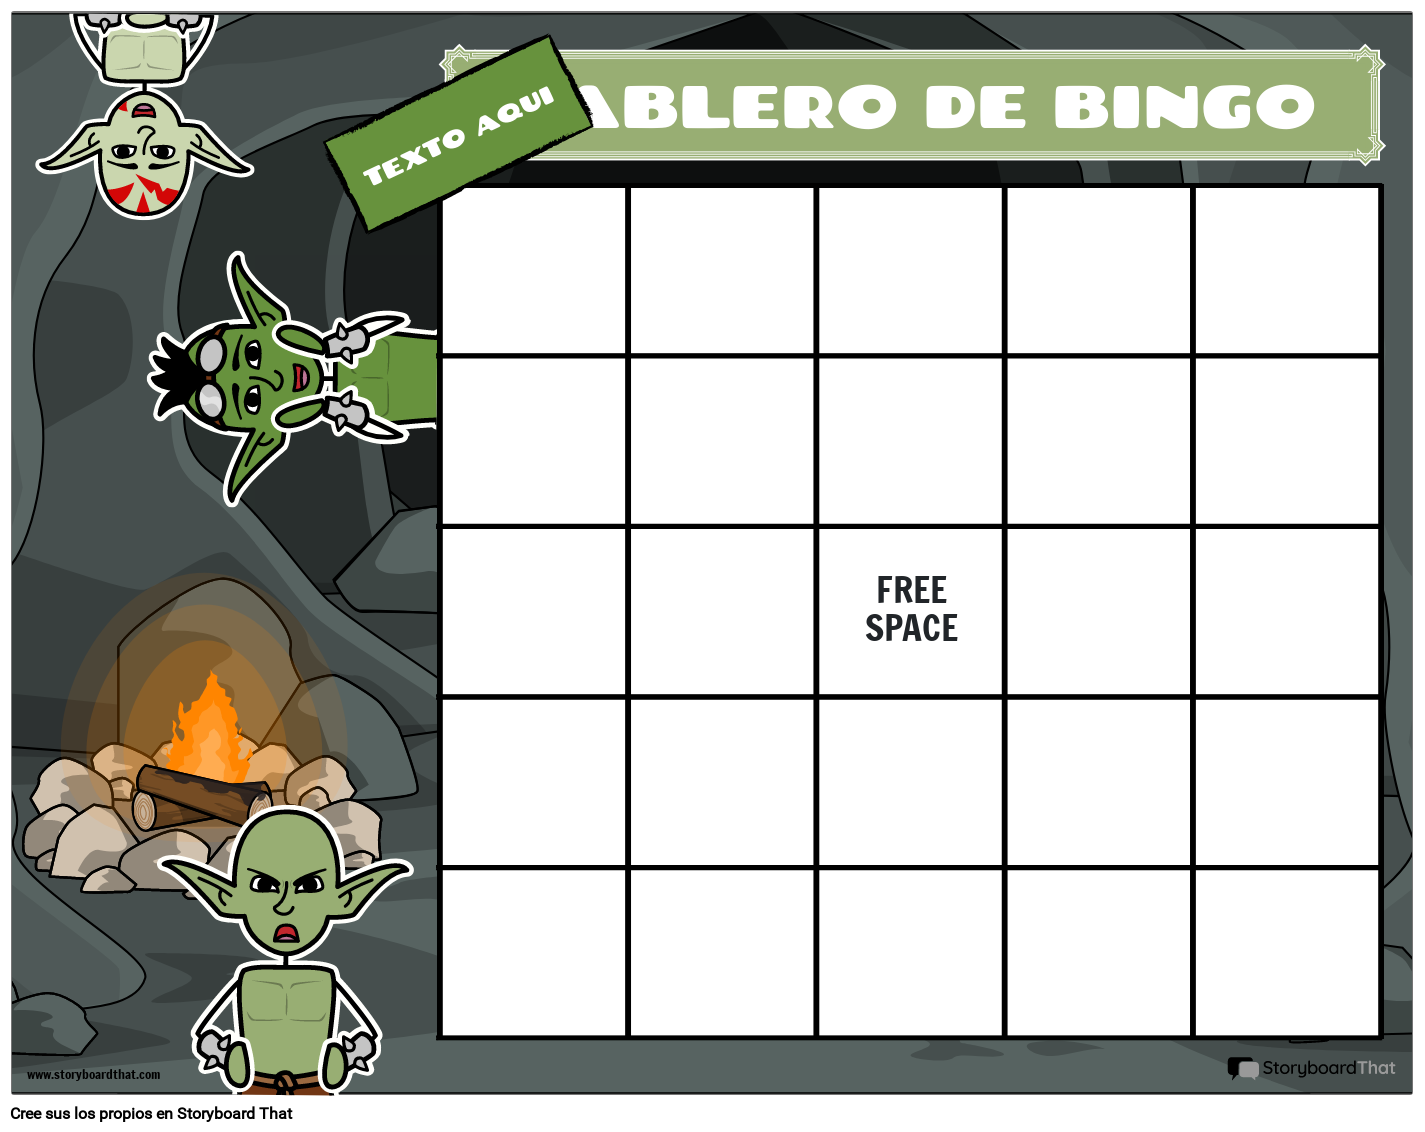 Crear cartones de bingo - Bingo Maker